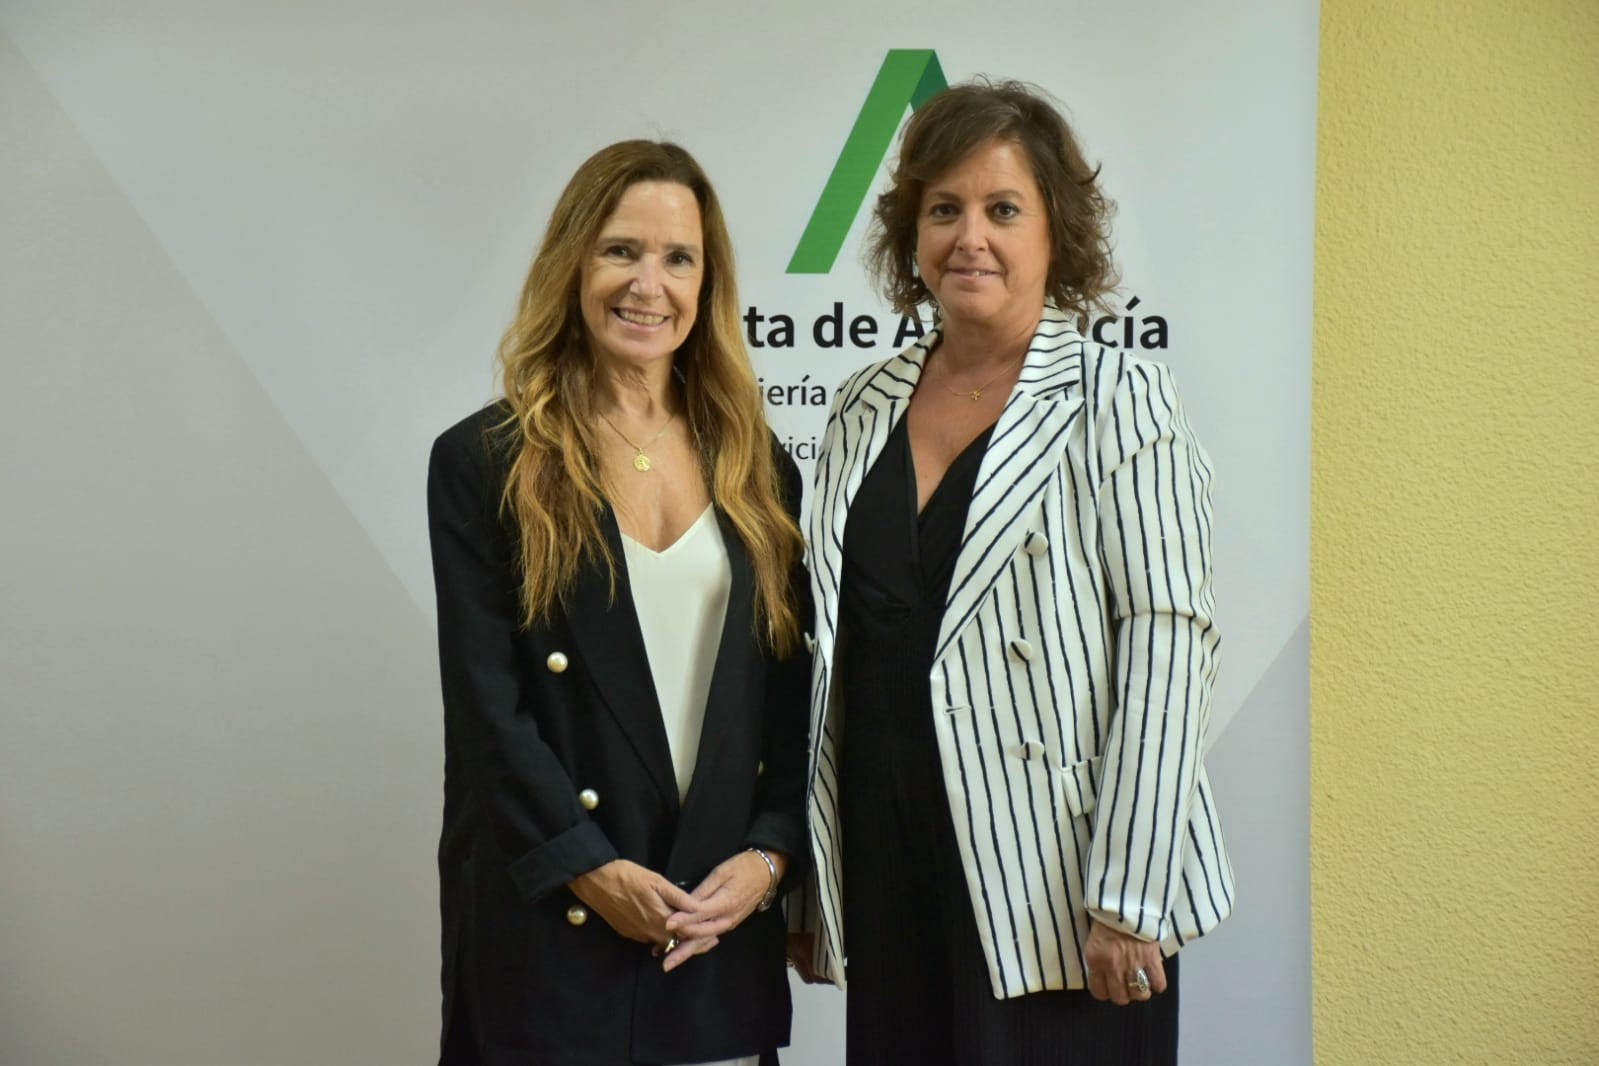 La adjunta primera del Defensor del Pueblo, Teresa Jiménez-Becerril, se reúne con la consejera de Salud de la Junta de Andalucía, Catalina García